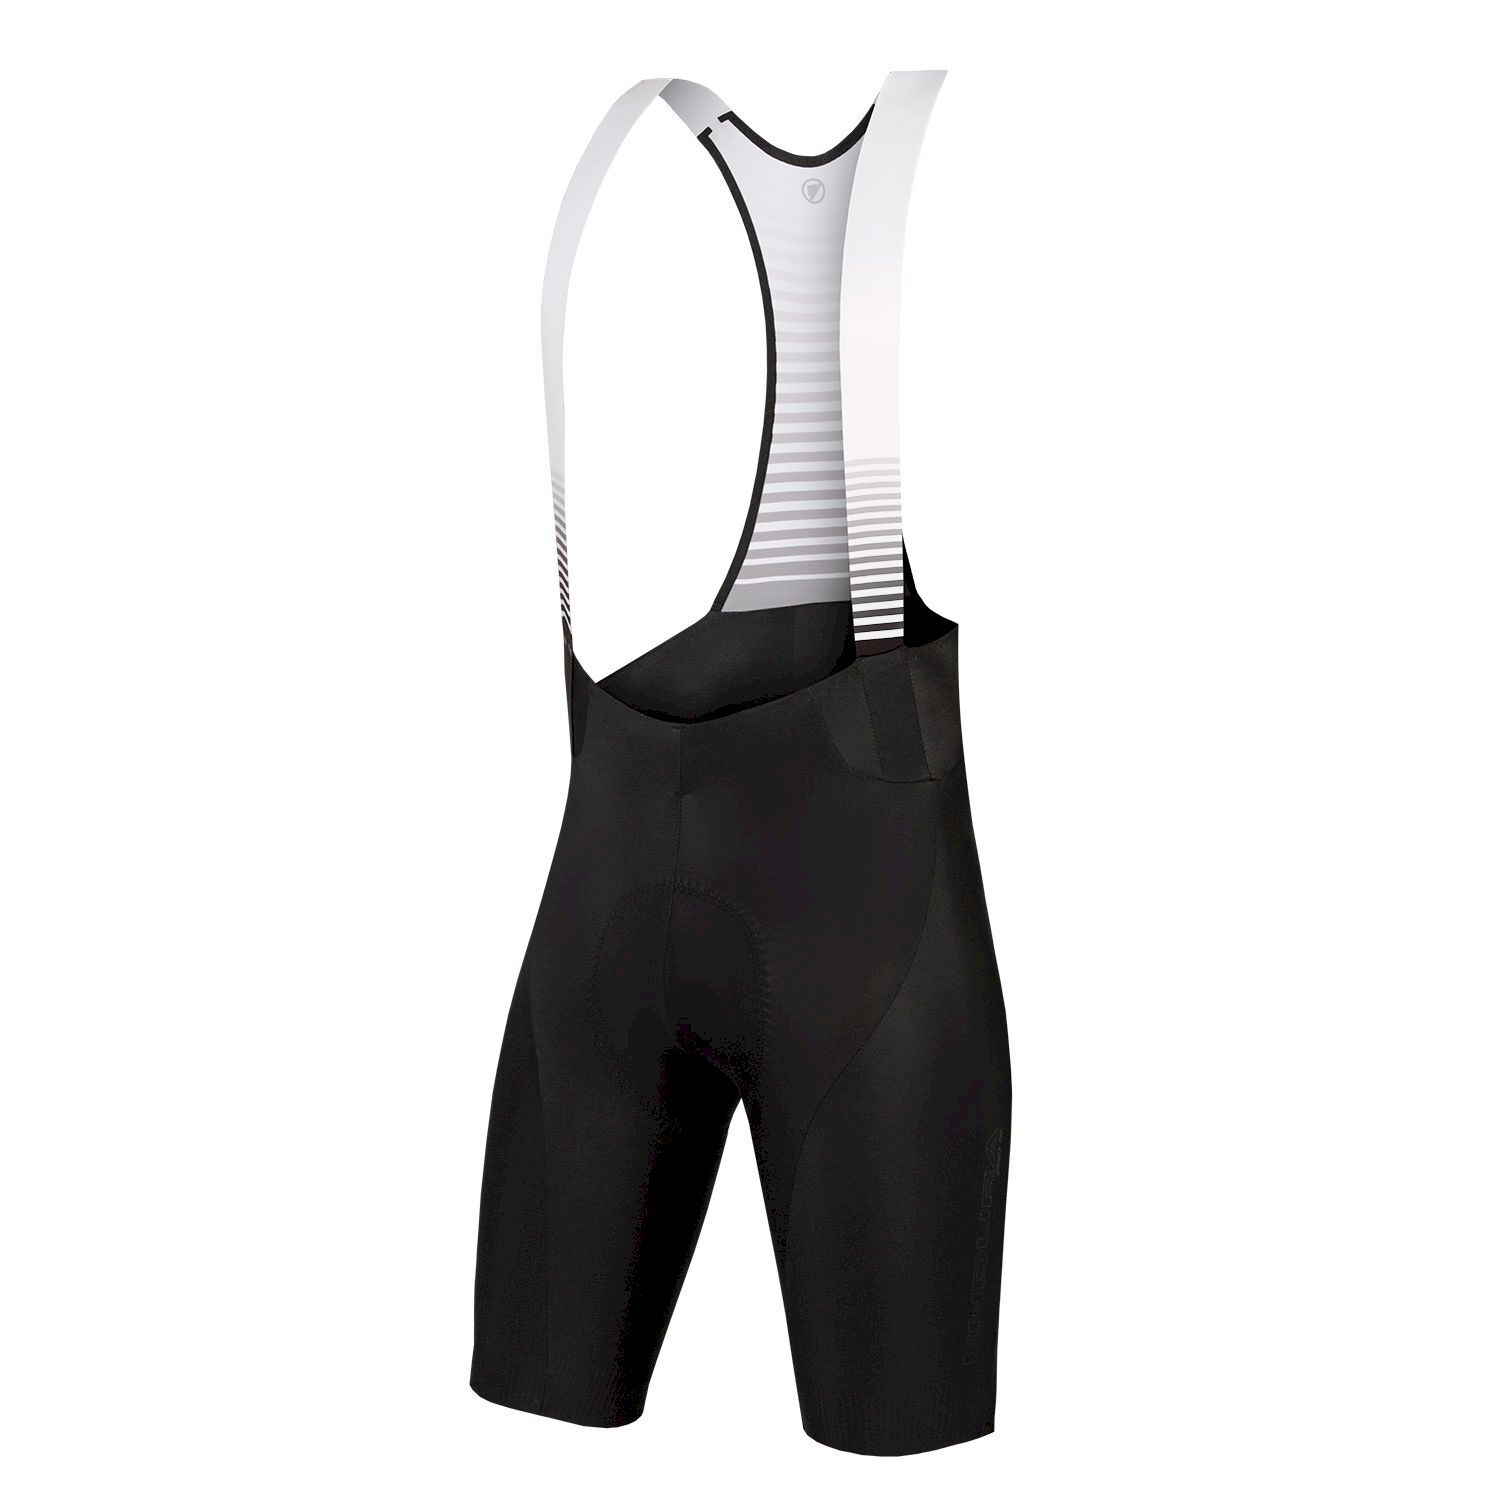 Endura Pro SL Bibshort Medium Pad - Cycling shorts - Men's